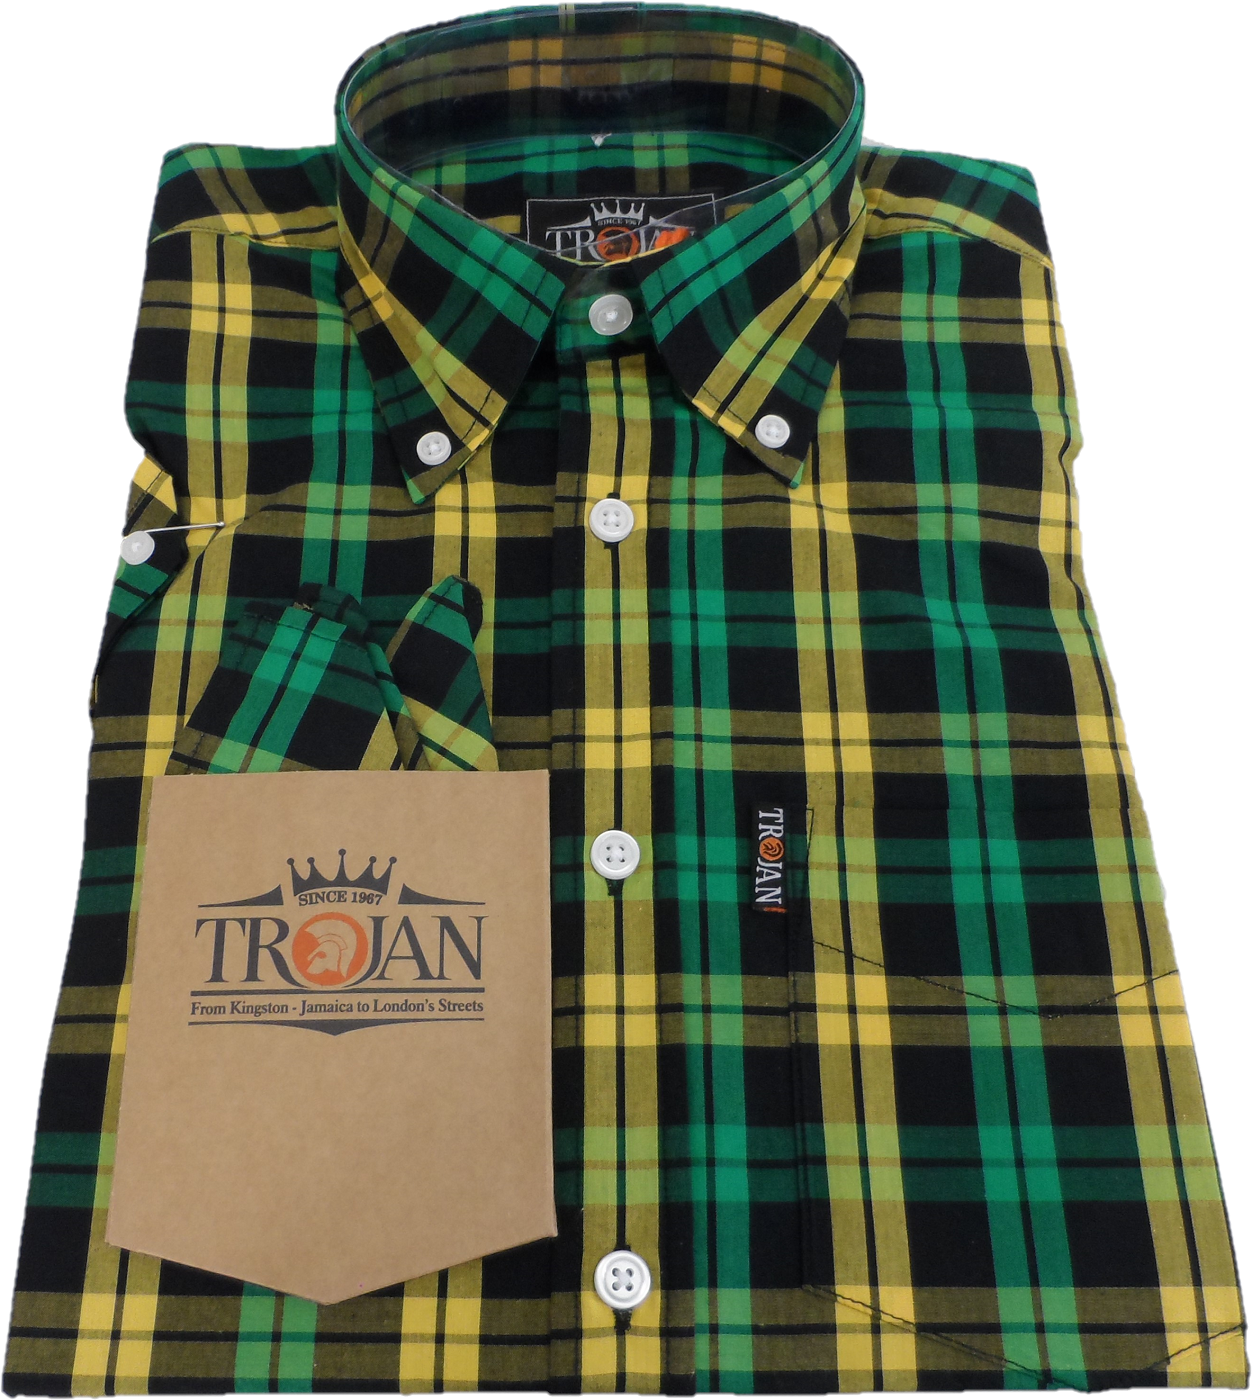 Trojan Mens Black/Green/Gold Check Short Sleeved Shirts and Pocket Square